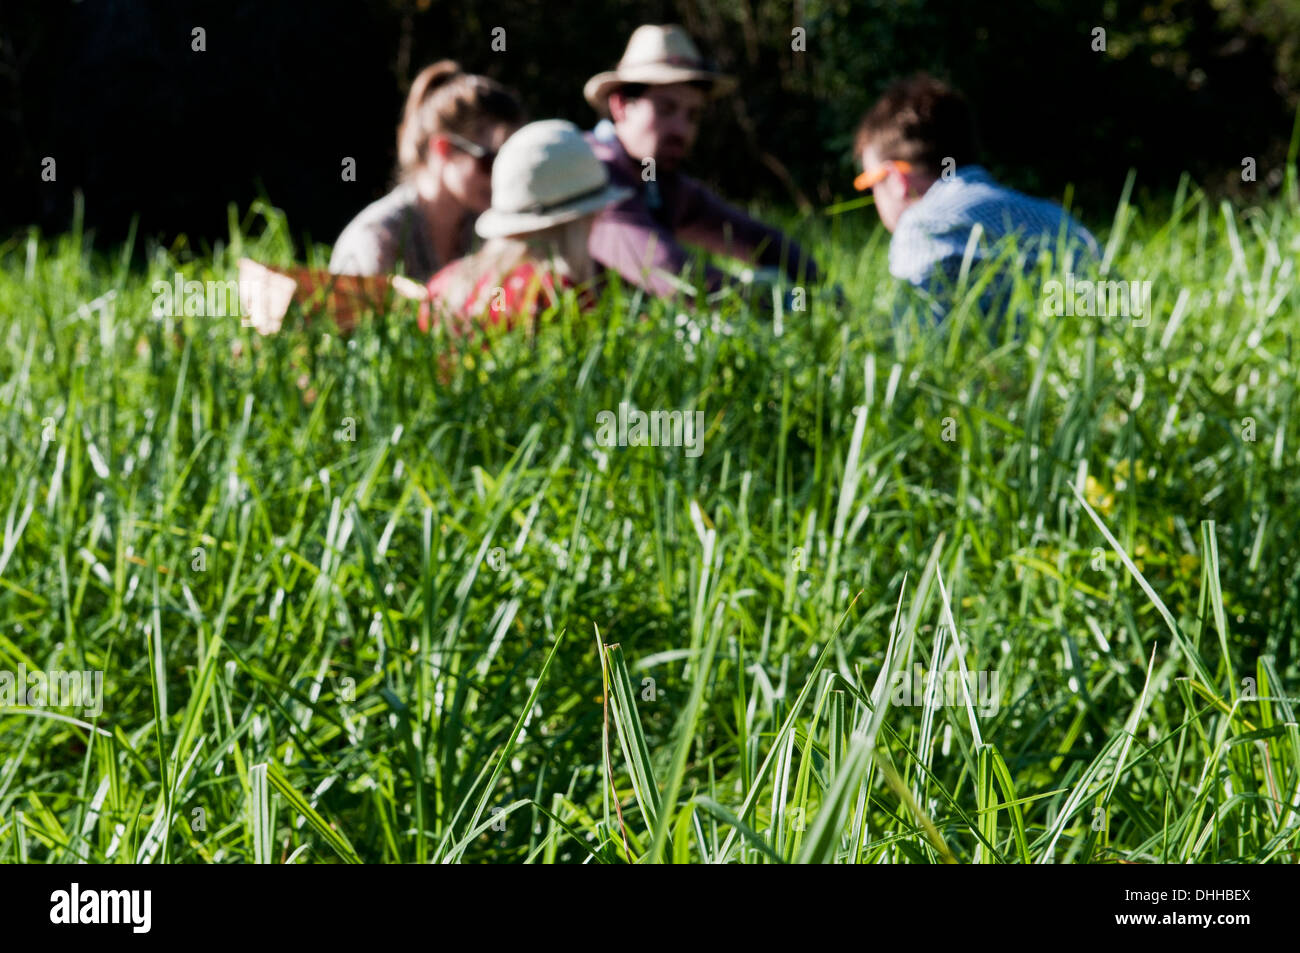 Gruppe von Freunden mit Picknick langes Gras Stockfoto